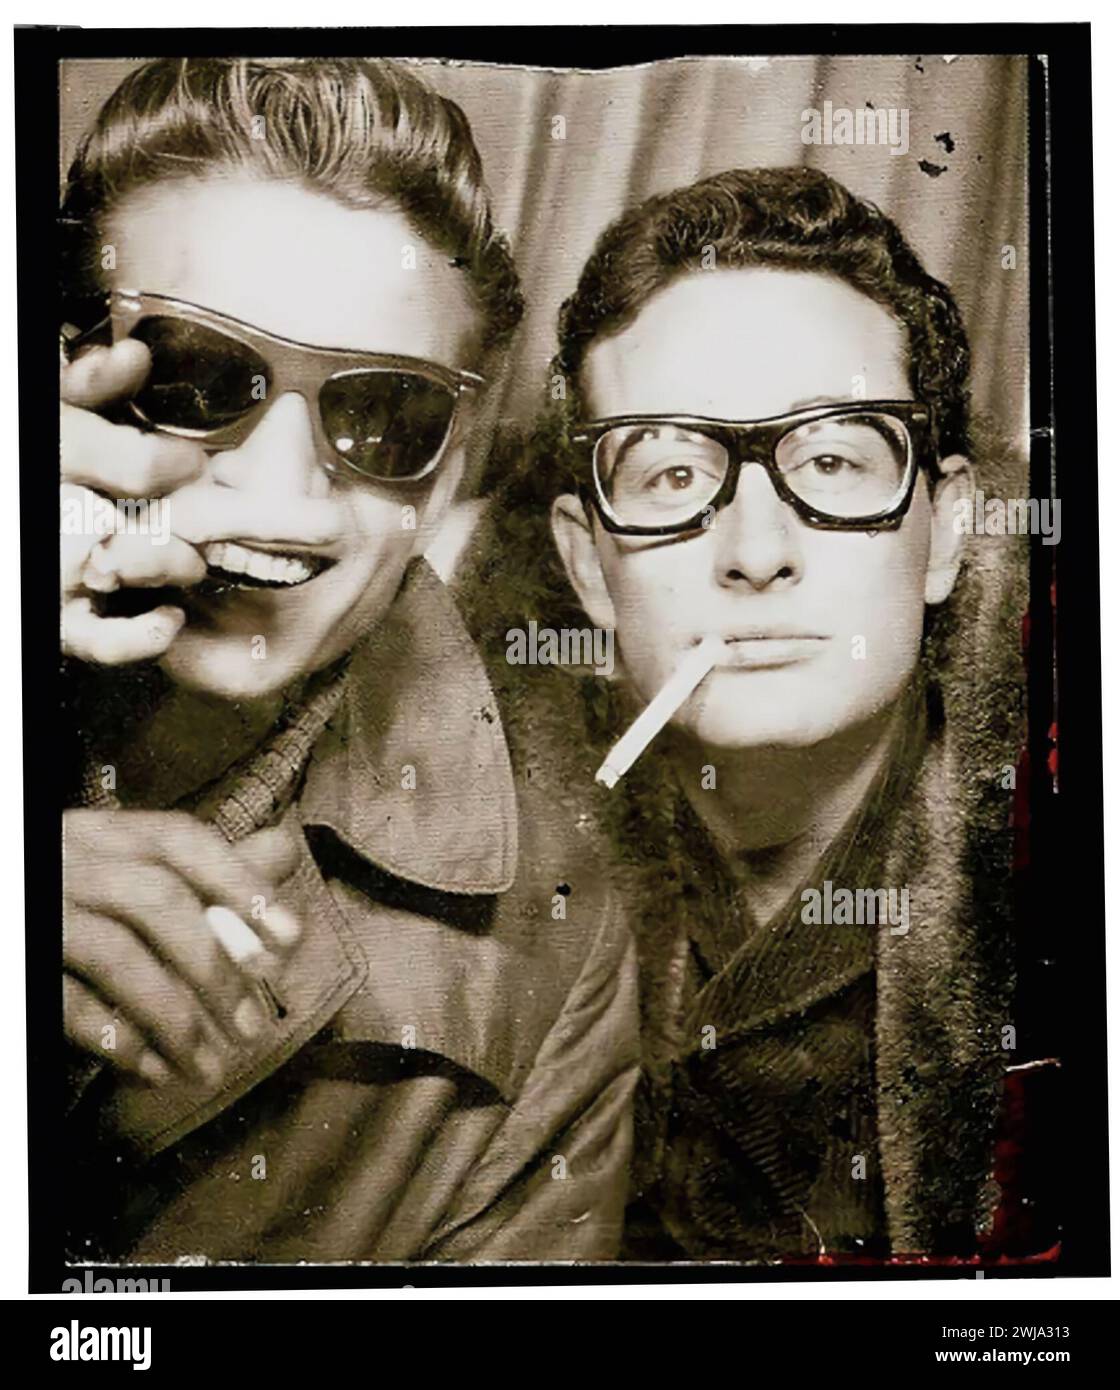 Buddy Holly et Waylon Jennings photographiés dans une cabine photo à Central Station, à New York. 1959. Banque D'Images